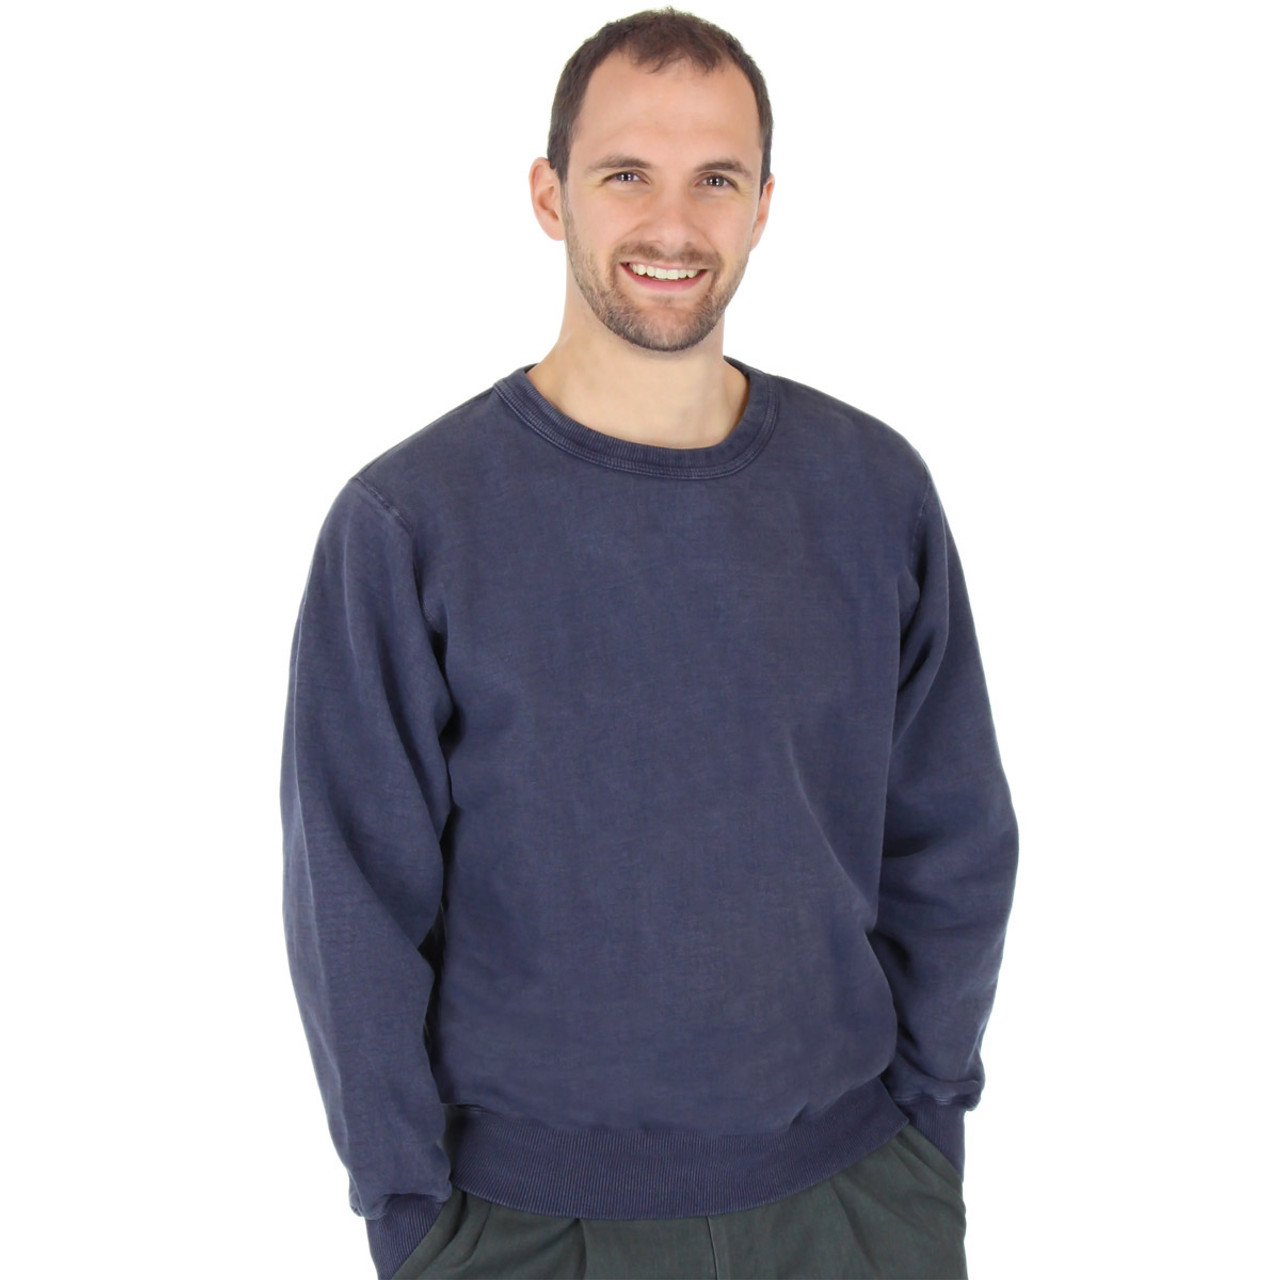 Gildan Crewneck Sweatshirt Unisex Sweatshirts Basic Casual Sweatshirts for  Women Men's Fleece Crewneck Sweatshirt Long Sleeve Plain Sweatshirt 